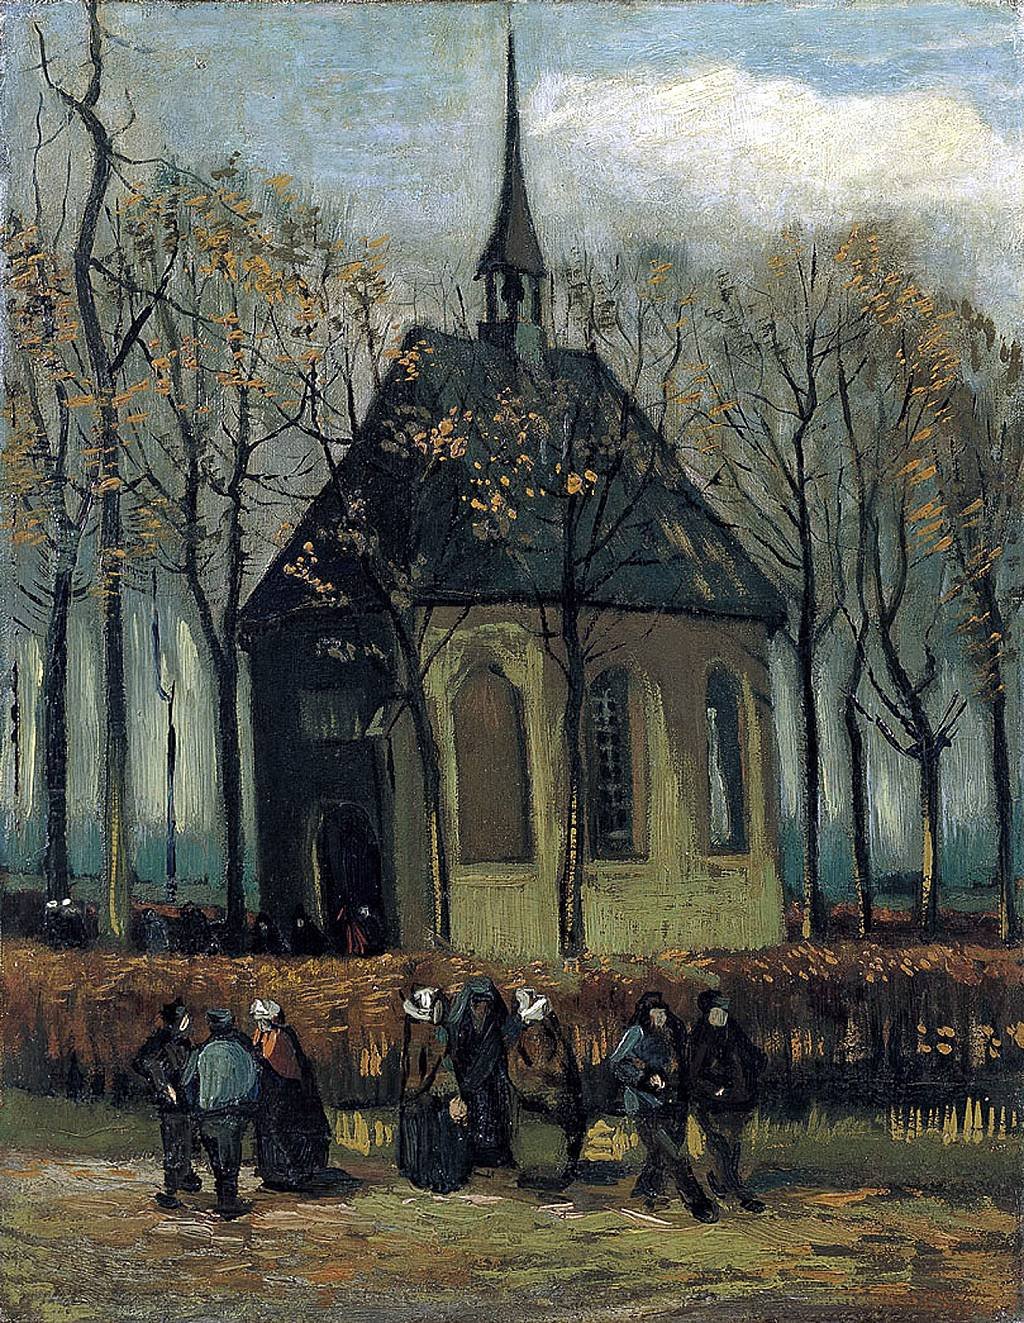 "Congregación saliendo de la Iglesia Reformada en Nuenen", Vincent van Gogh 1884-1885